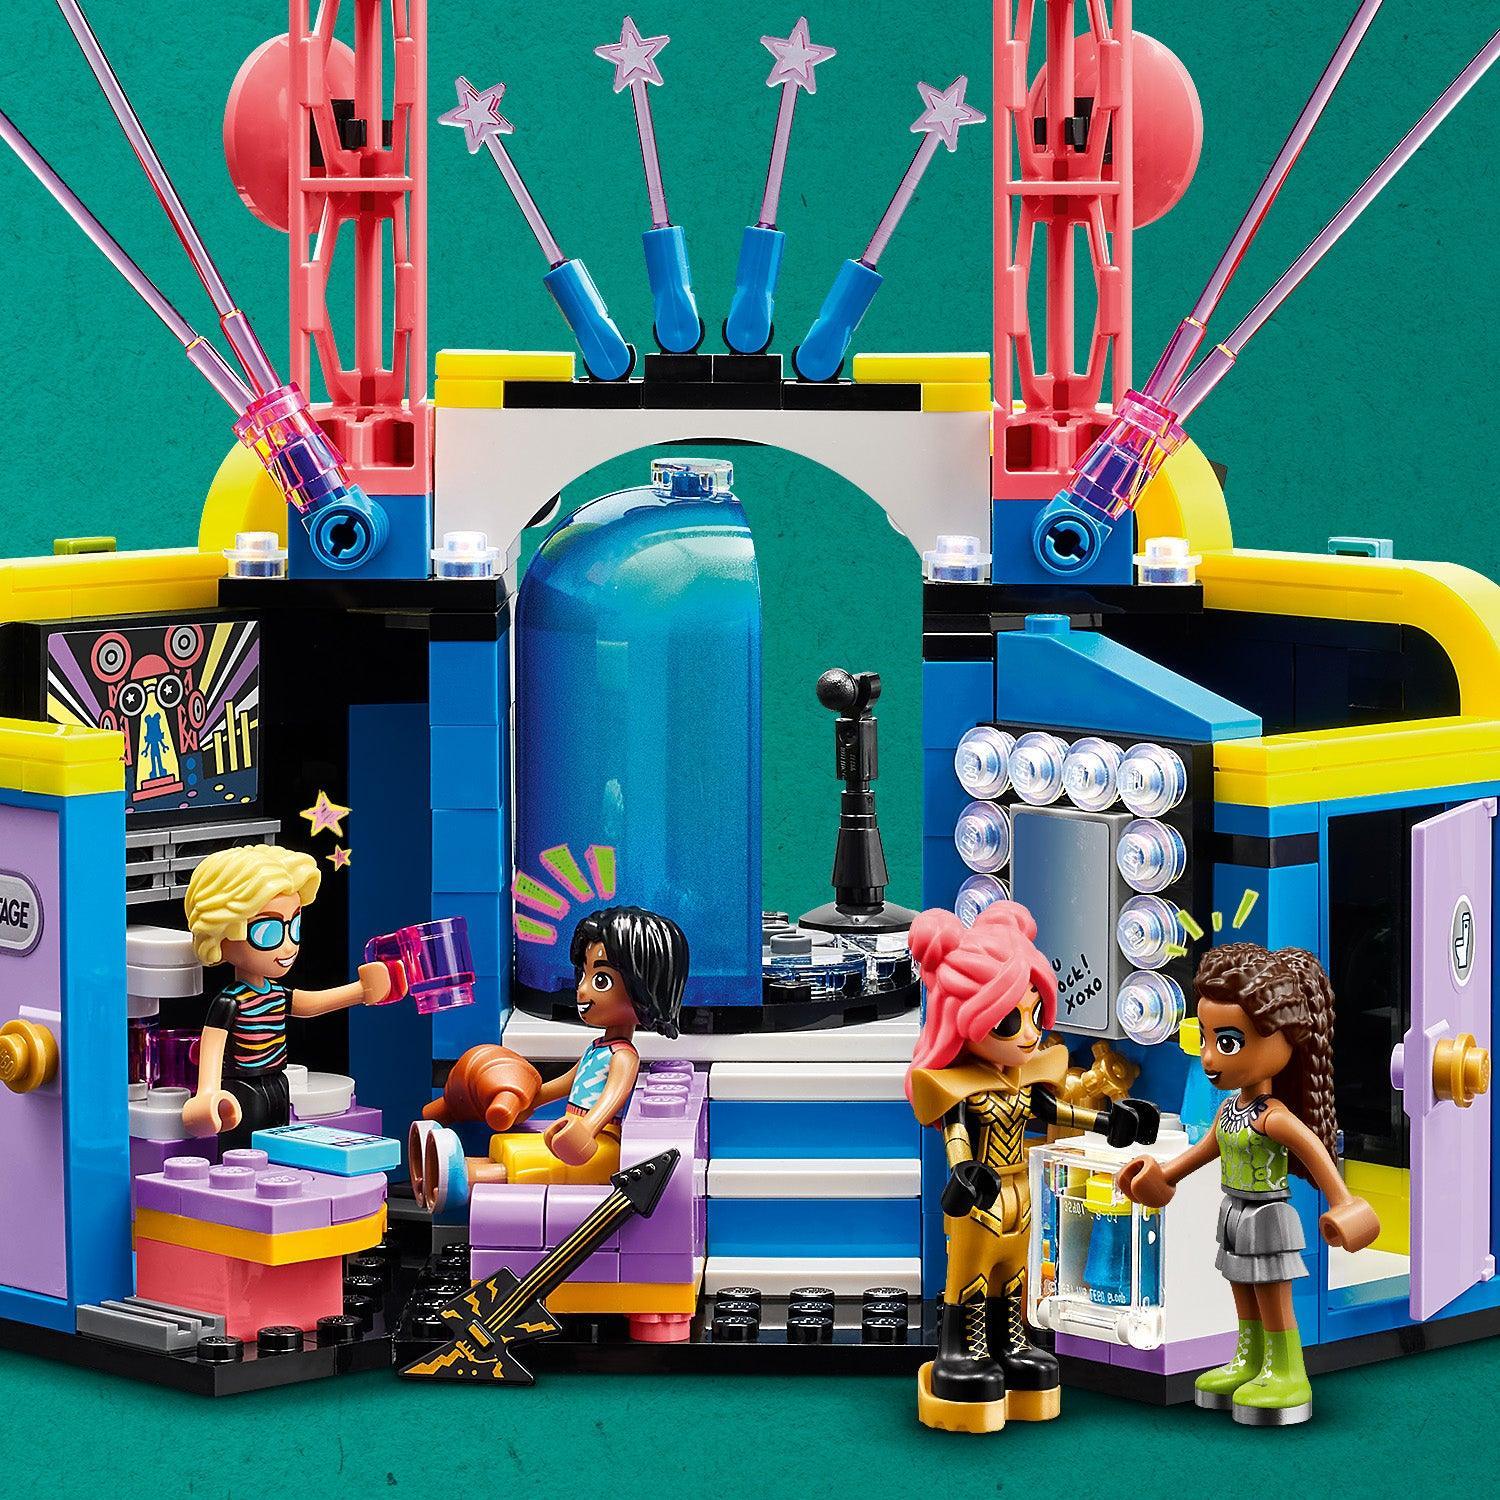 LEGO Heartlake City muziek talenten show 42616 Friends | 2TTOYS ✓ Official shop<br>